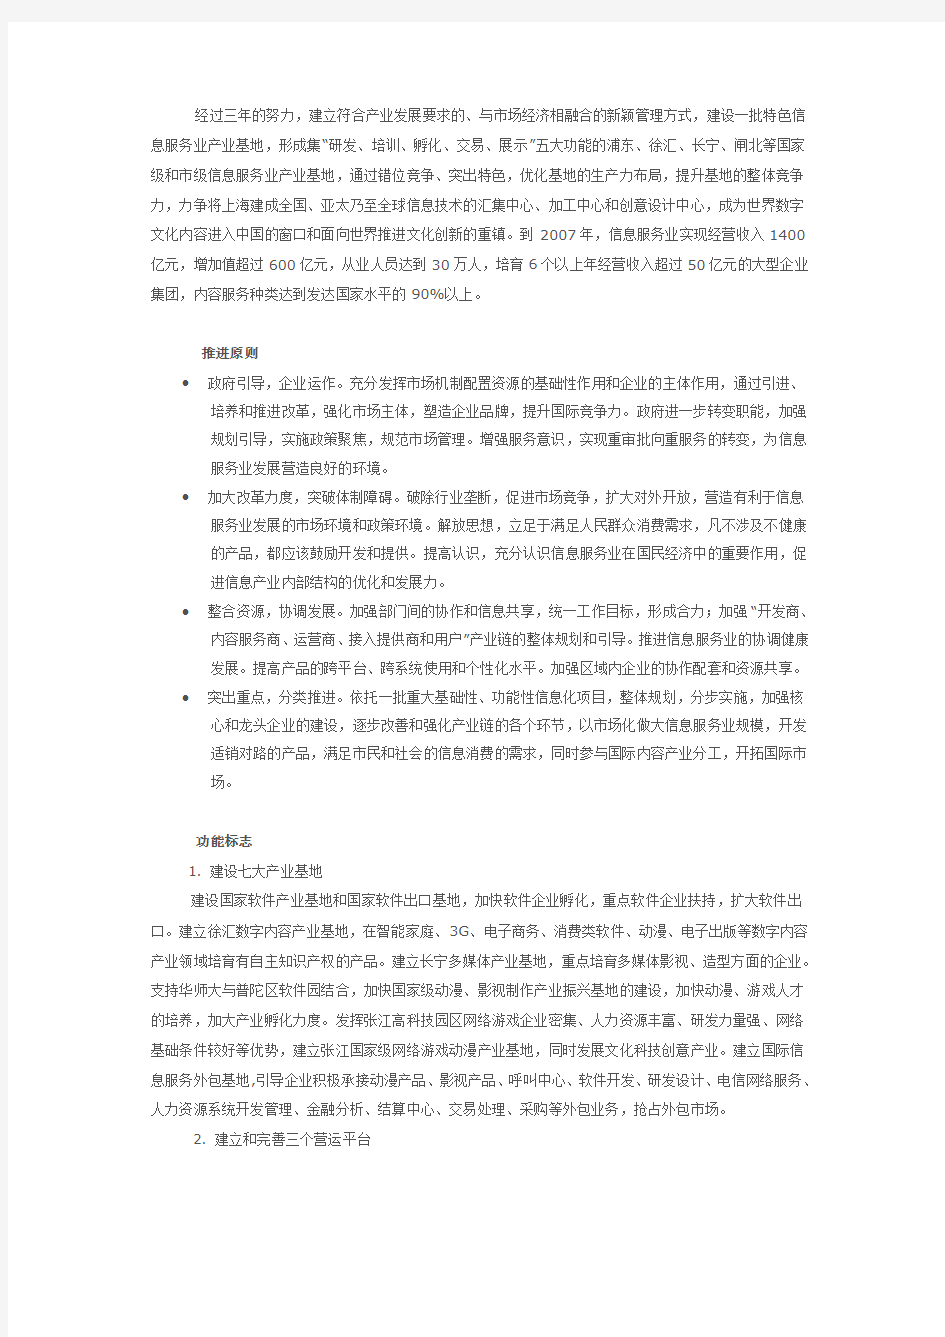 上海市信息服务业发展三年行动纲要(2006-2008)